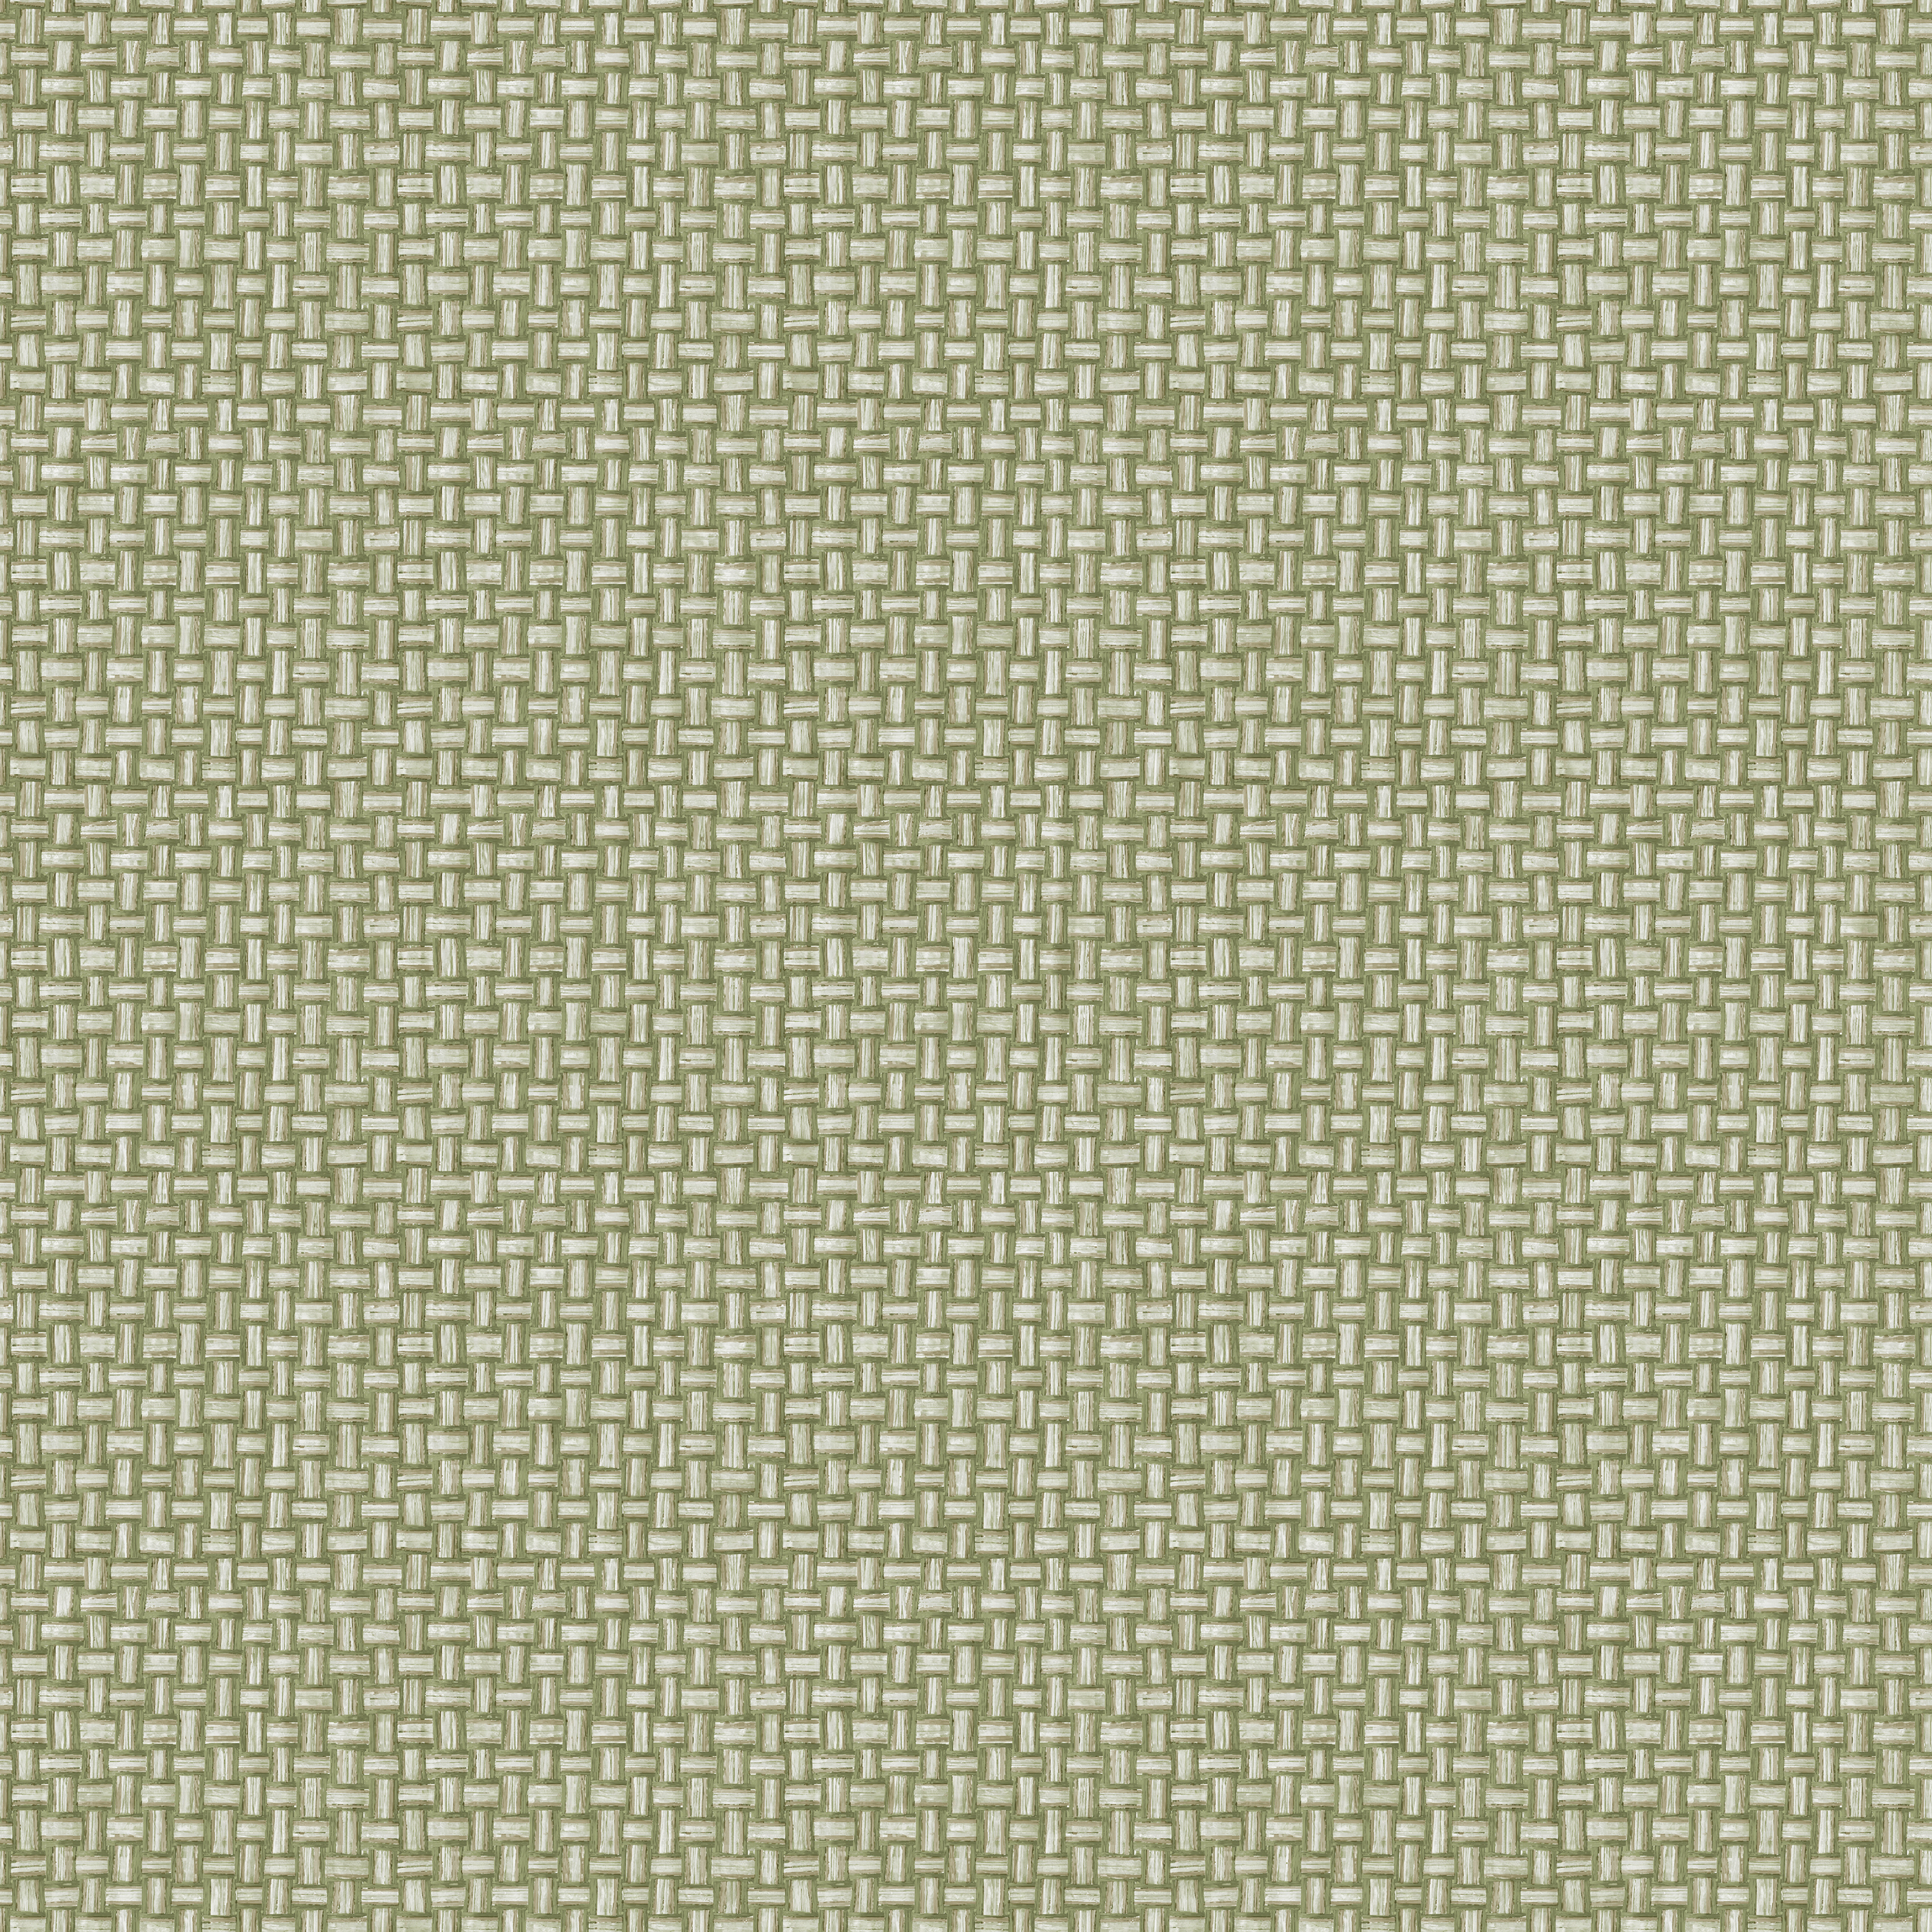 Holden Decor Basket Weave Green Wallpaper - 10.05m x 53cm